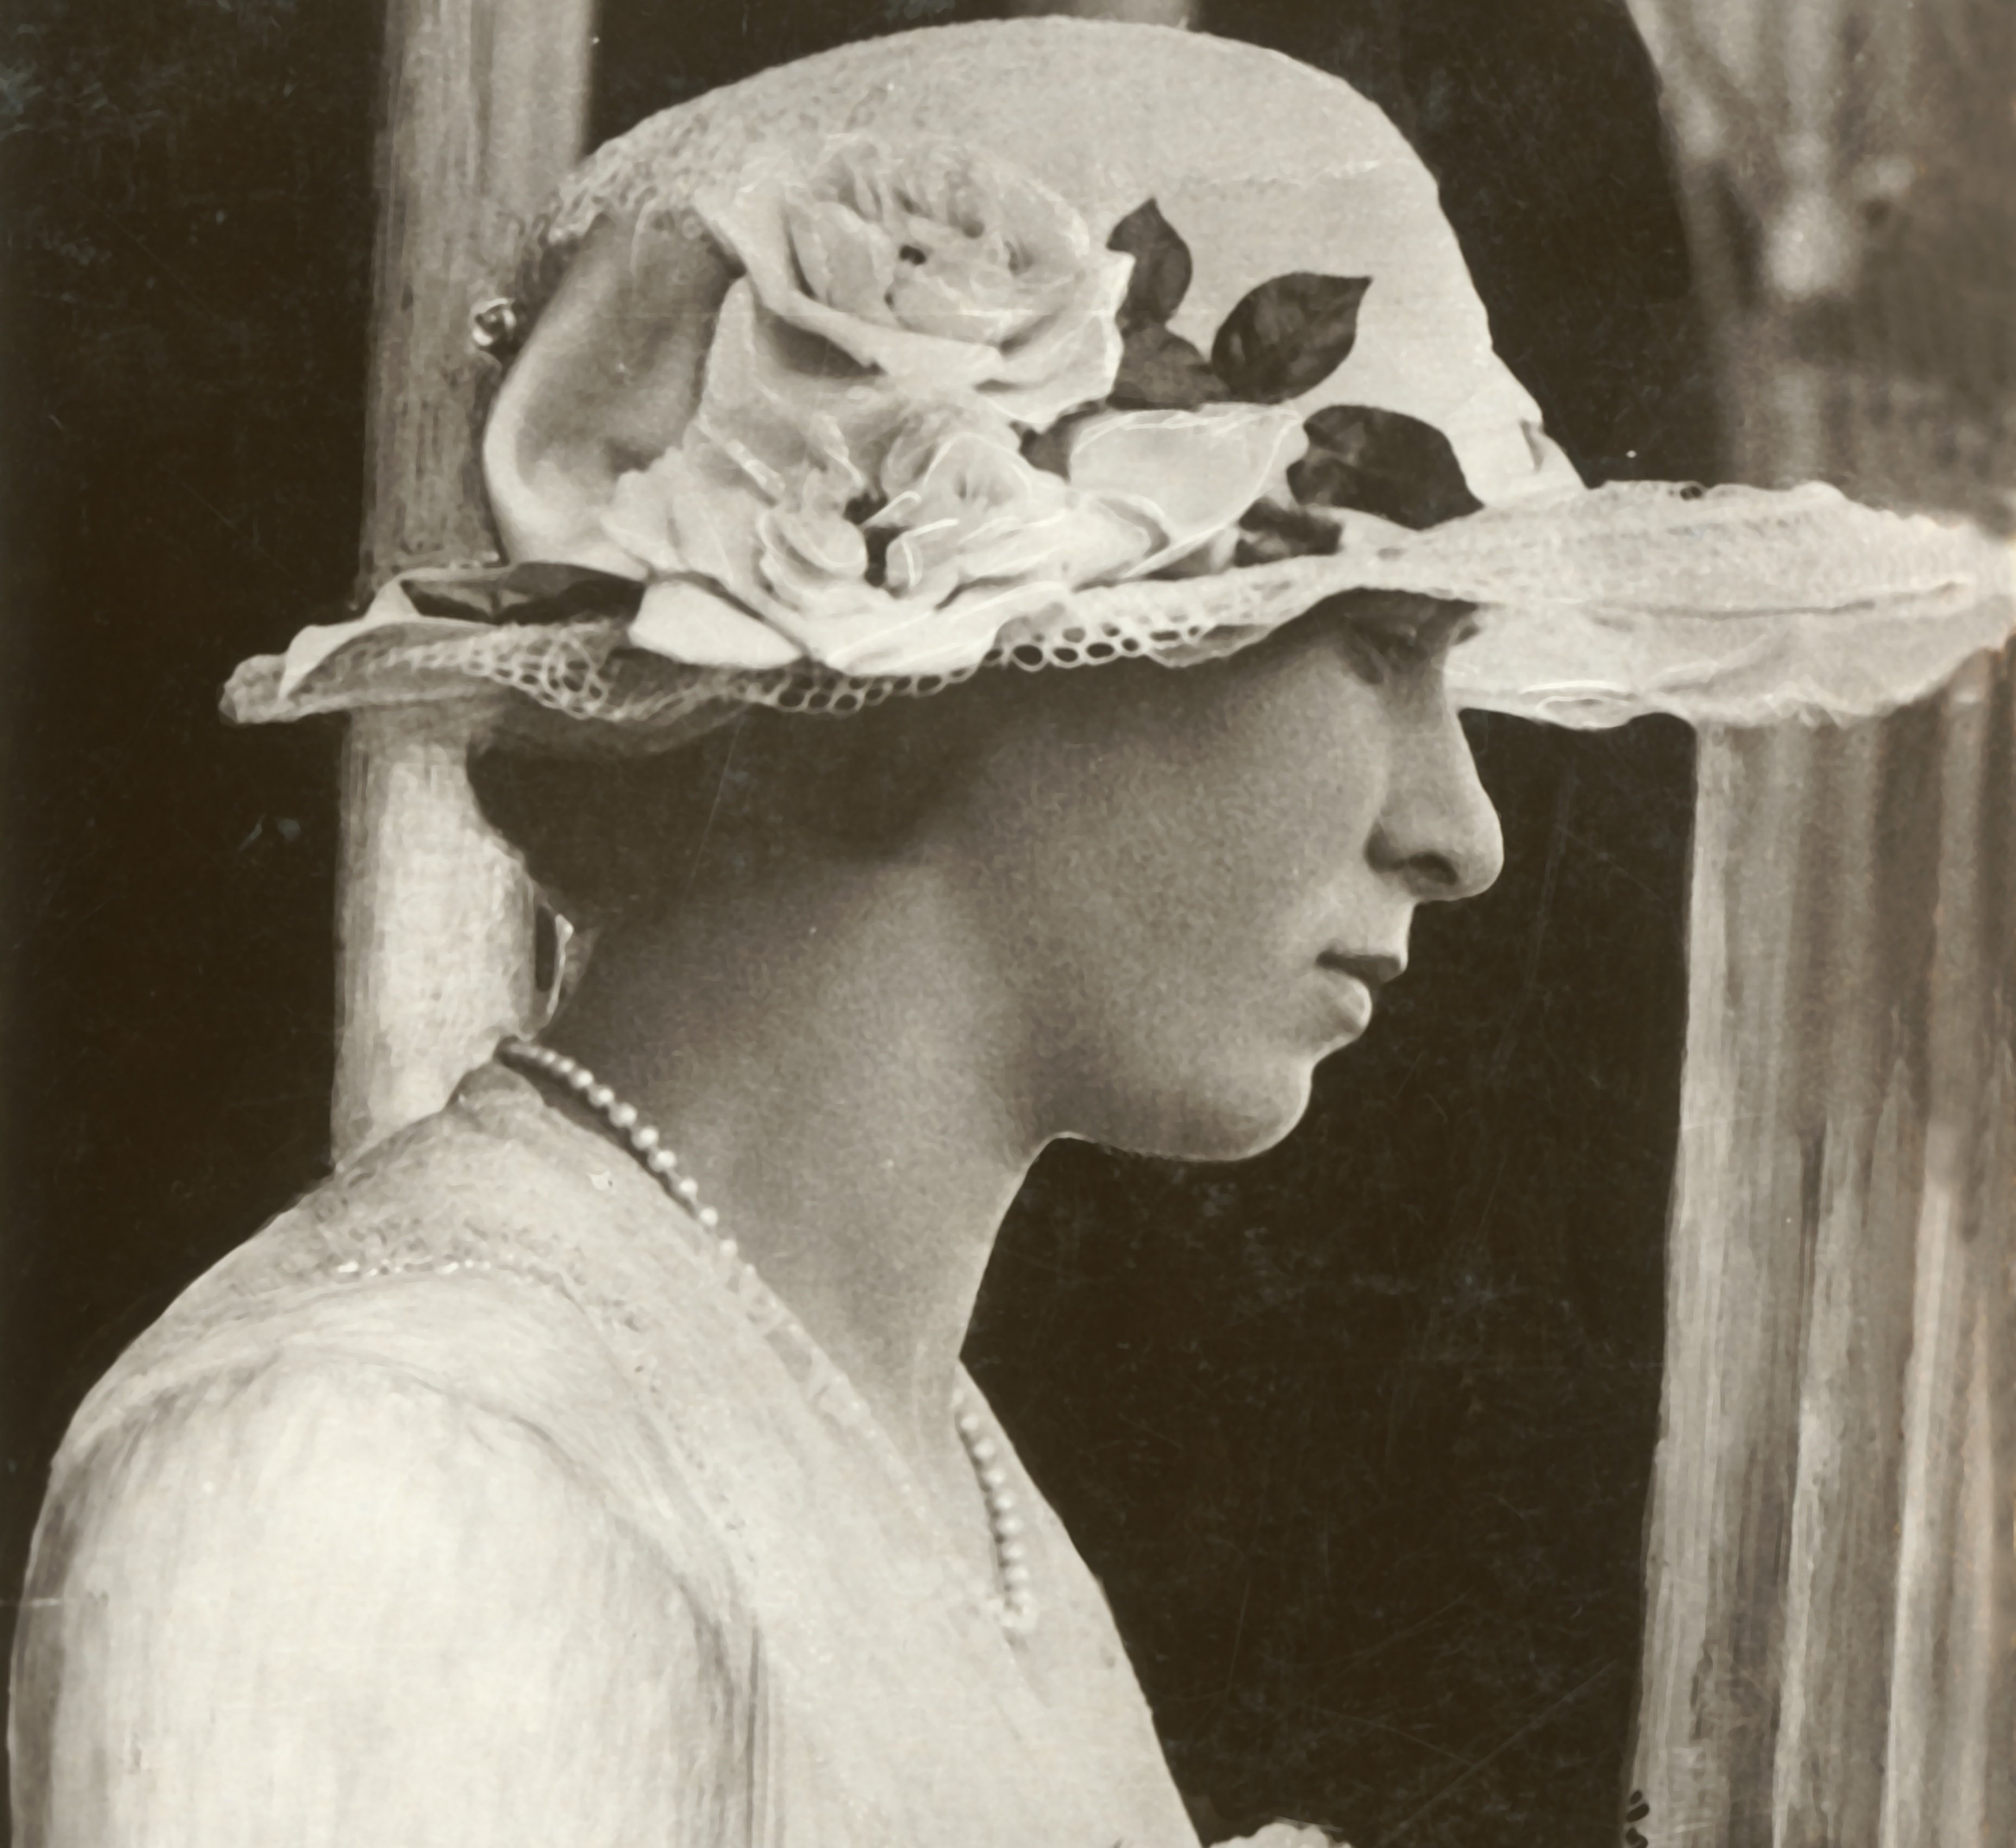 Retrato de la princesa Mary, tercera hija del Rey George V y Mary de Teck, alrededor de 1920. | Foto: Getty Images